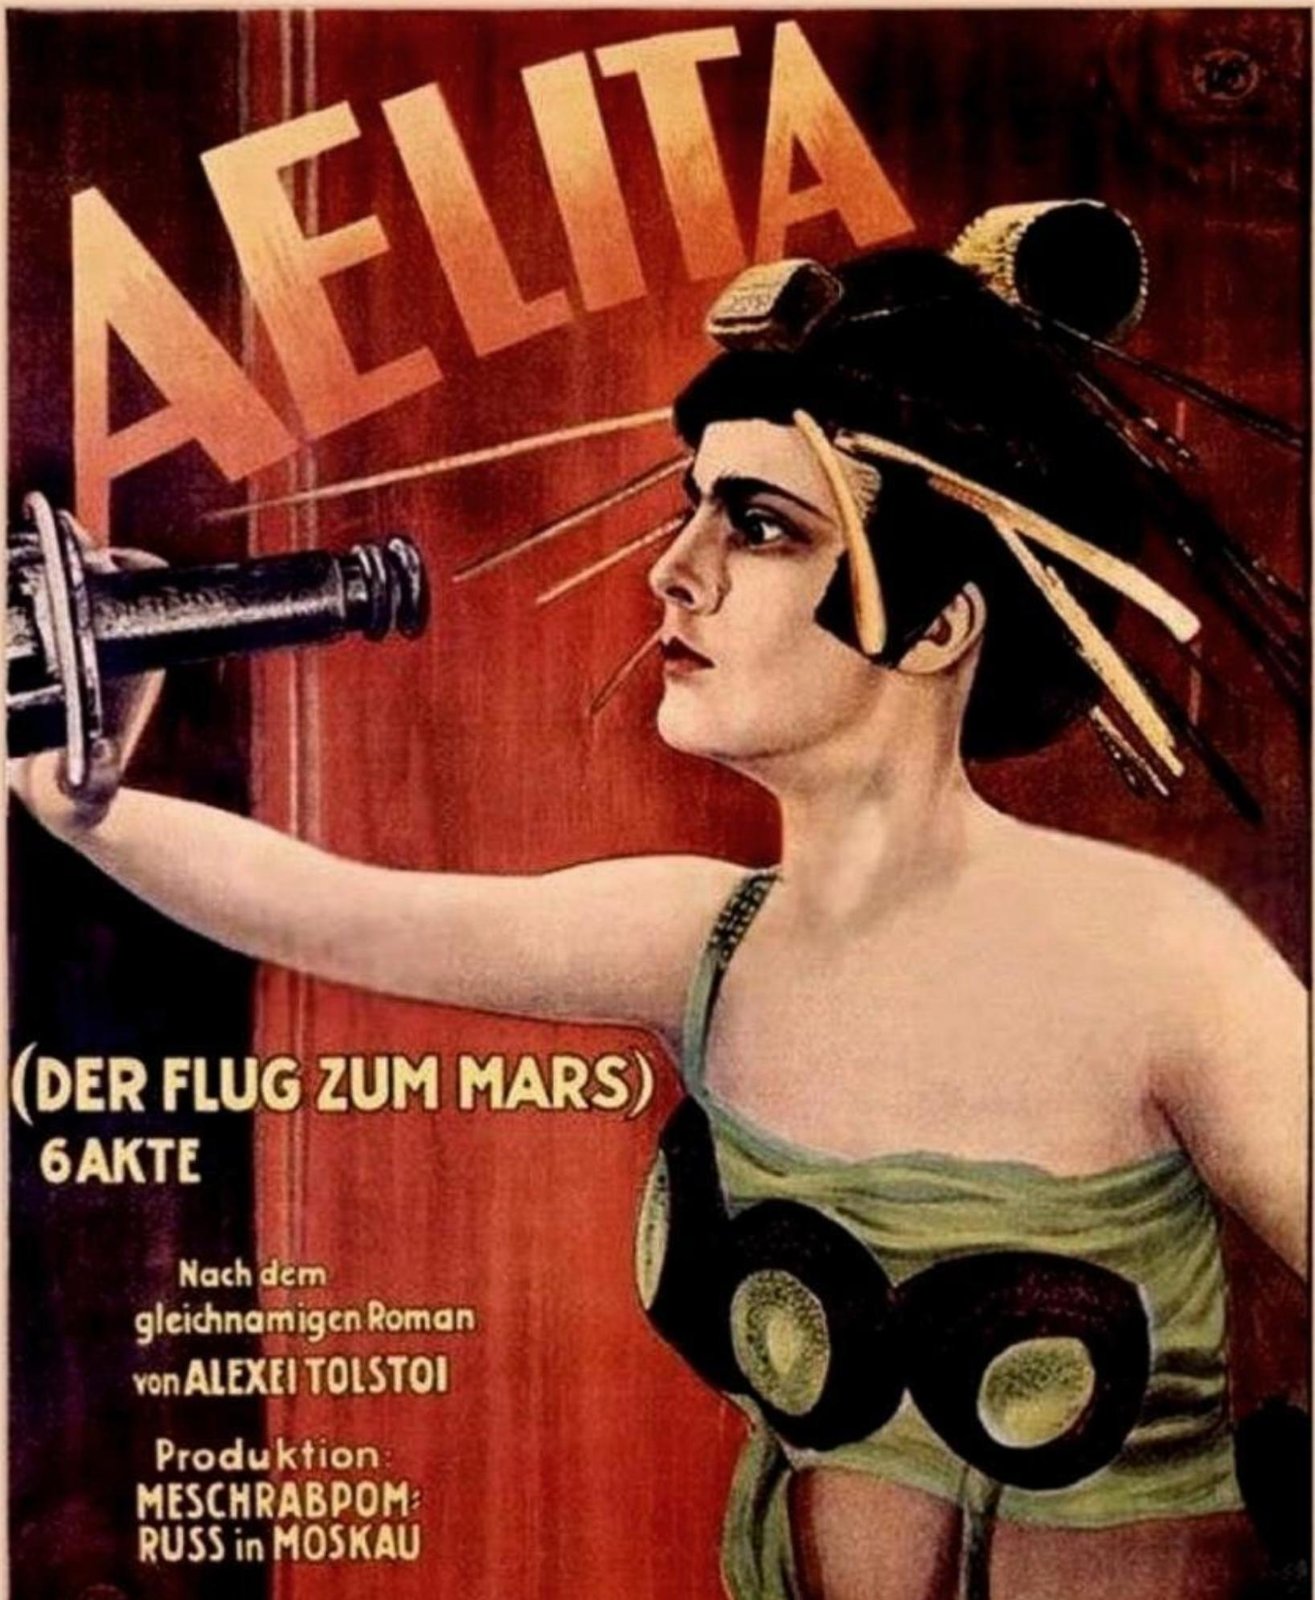 Aelita - Der Flug zum Mars (1924) Blu-ray Weltpremiere zum 100. Jubiläum - STUMME FILMKUNSTWERKE #3 - Nach dem gleichnamigen Roman von Alexei Tolstoi  (Blu-ray Disc)